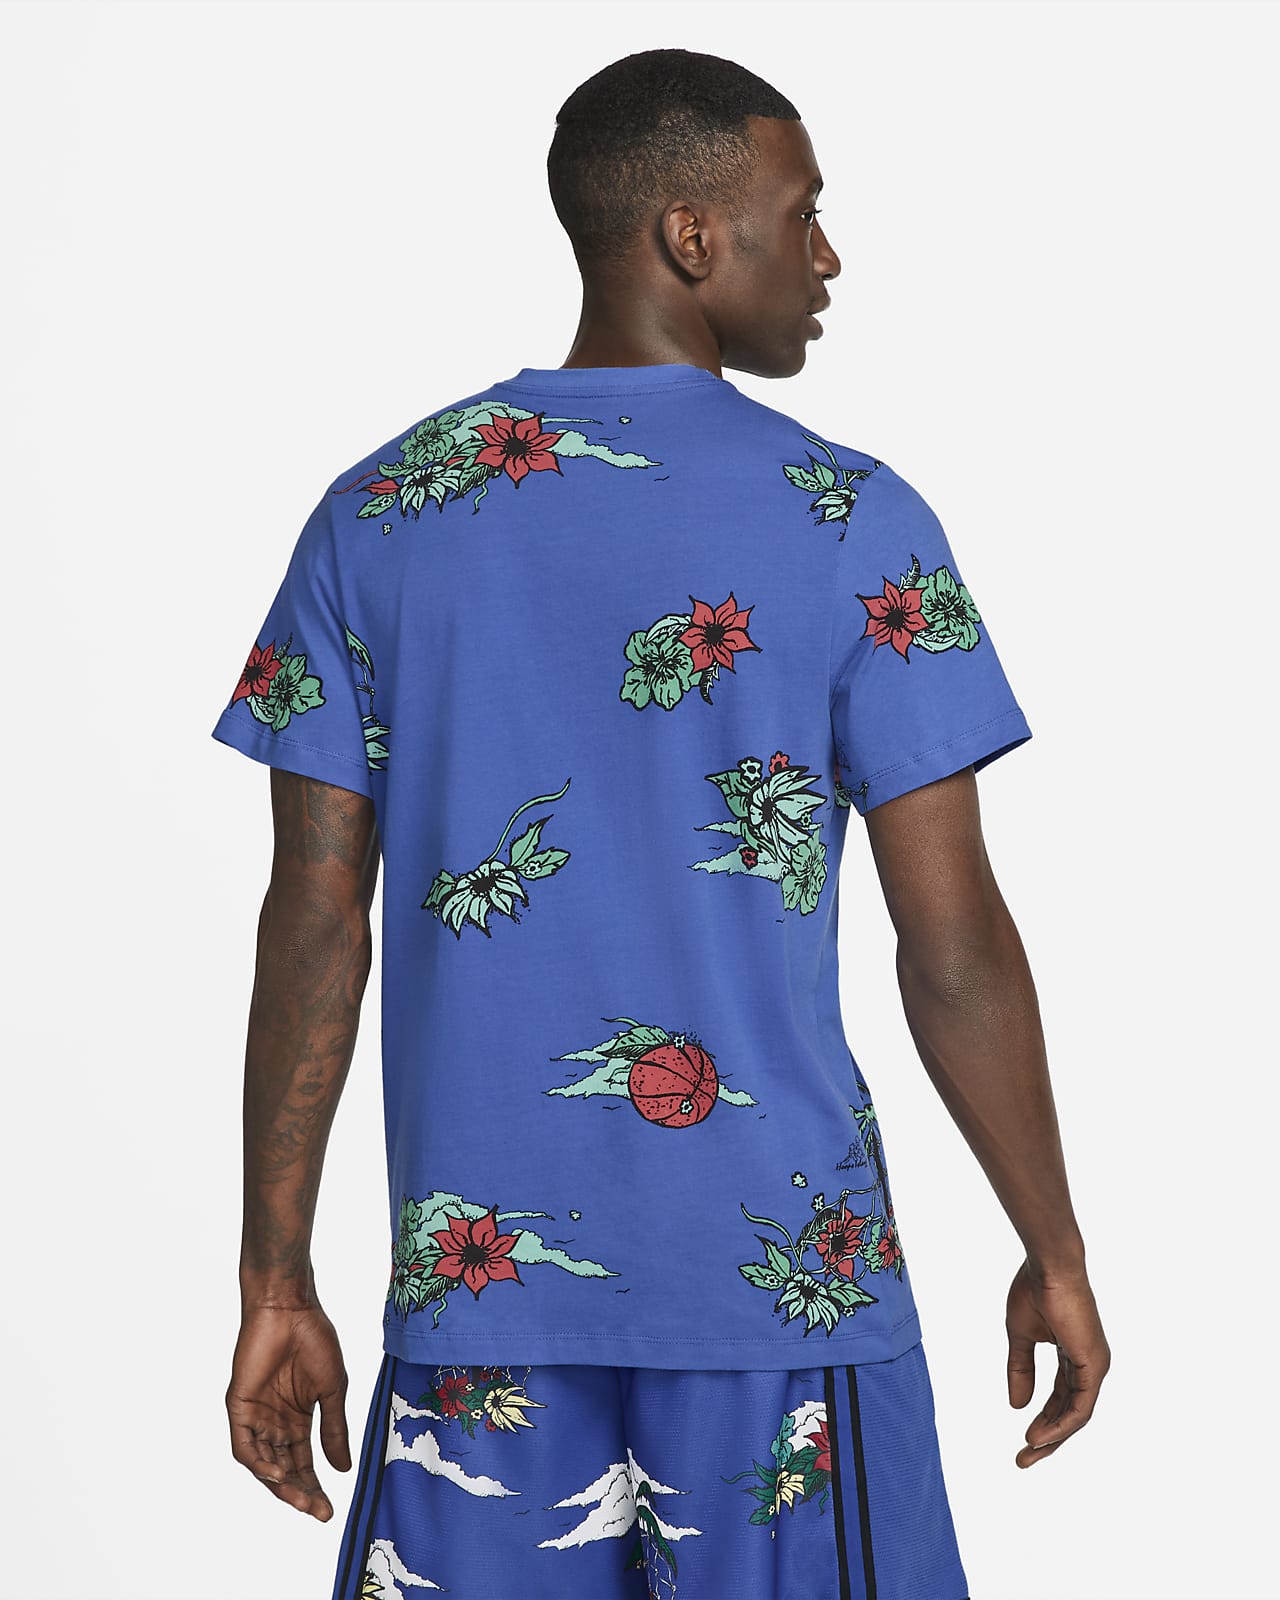 Nike Men's Allover Print Basketball T-Shirt.